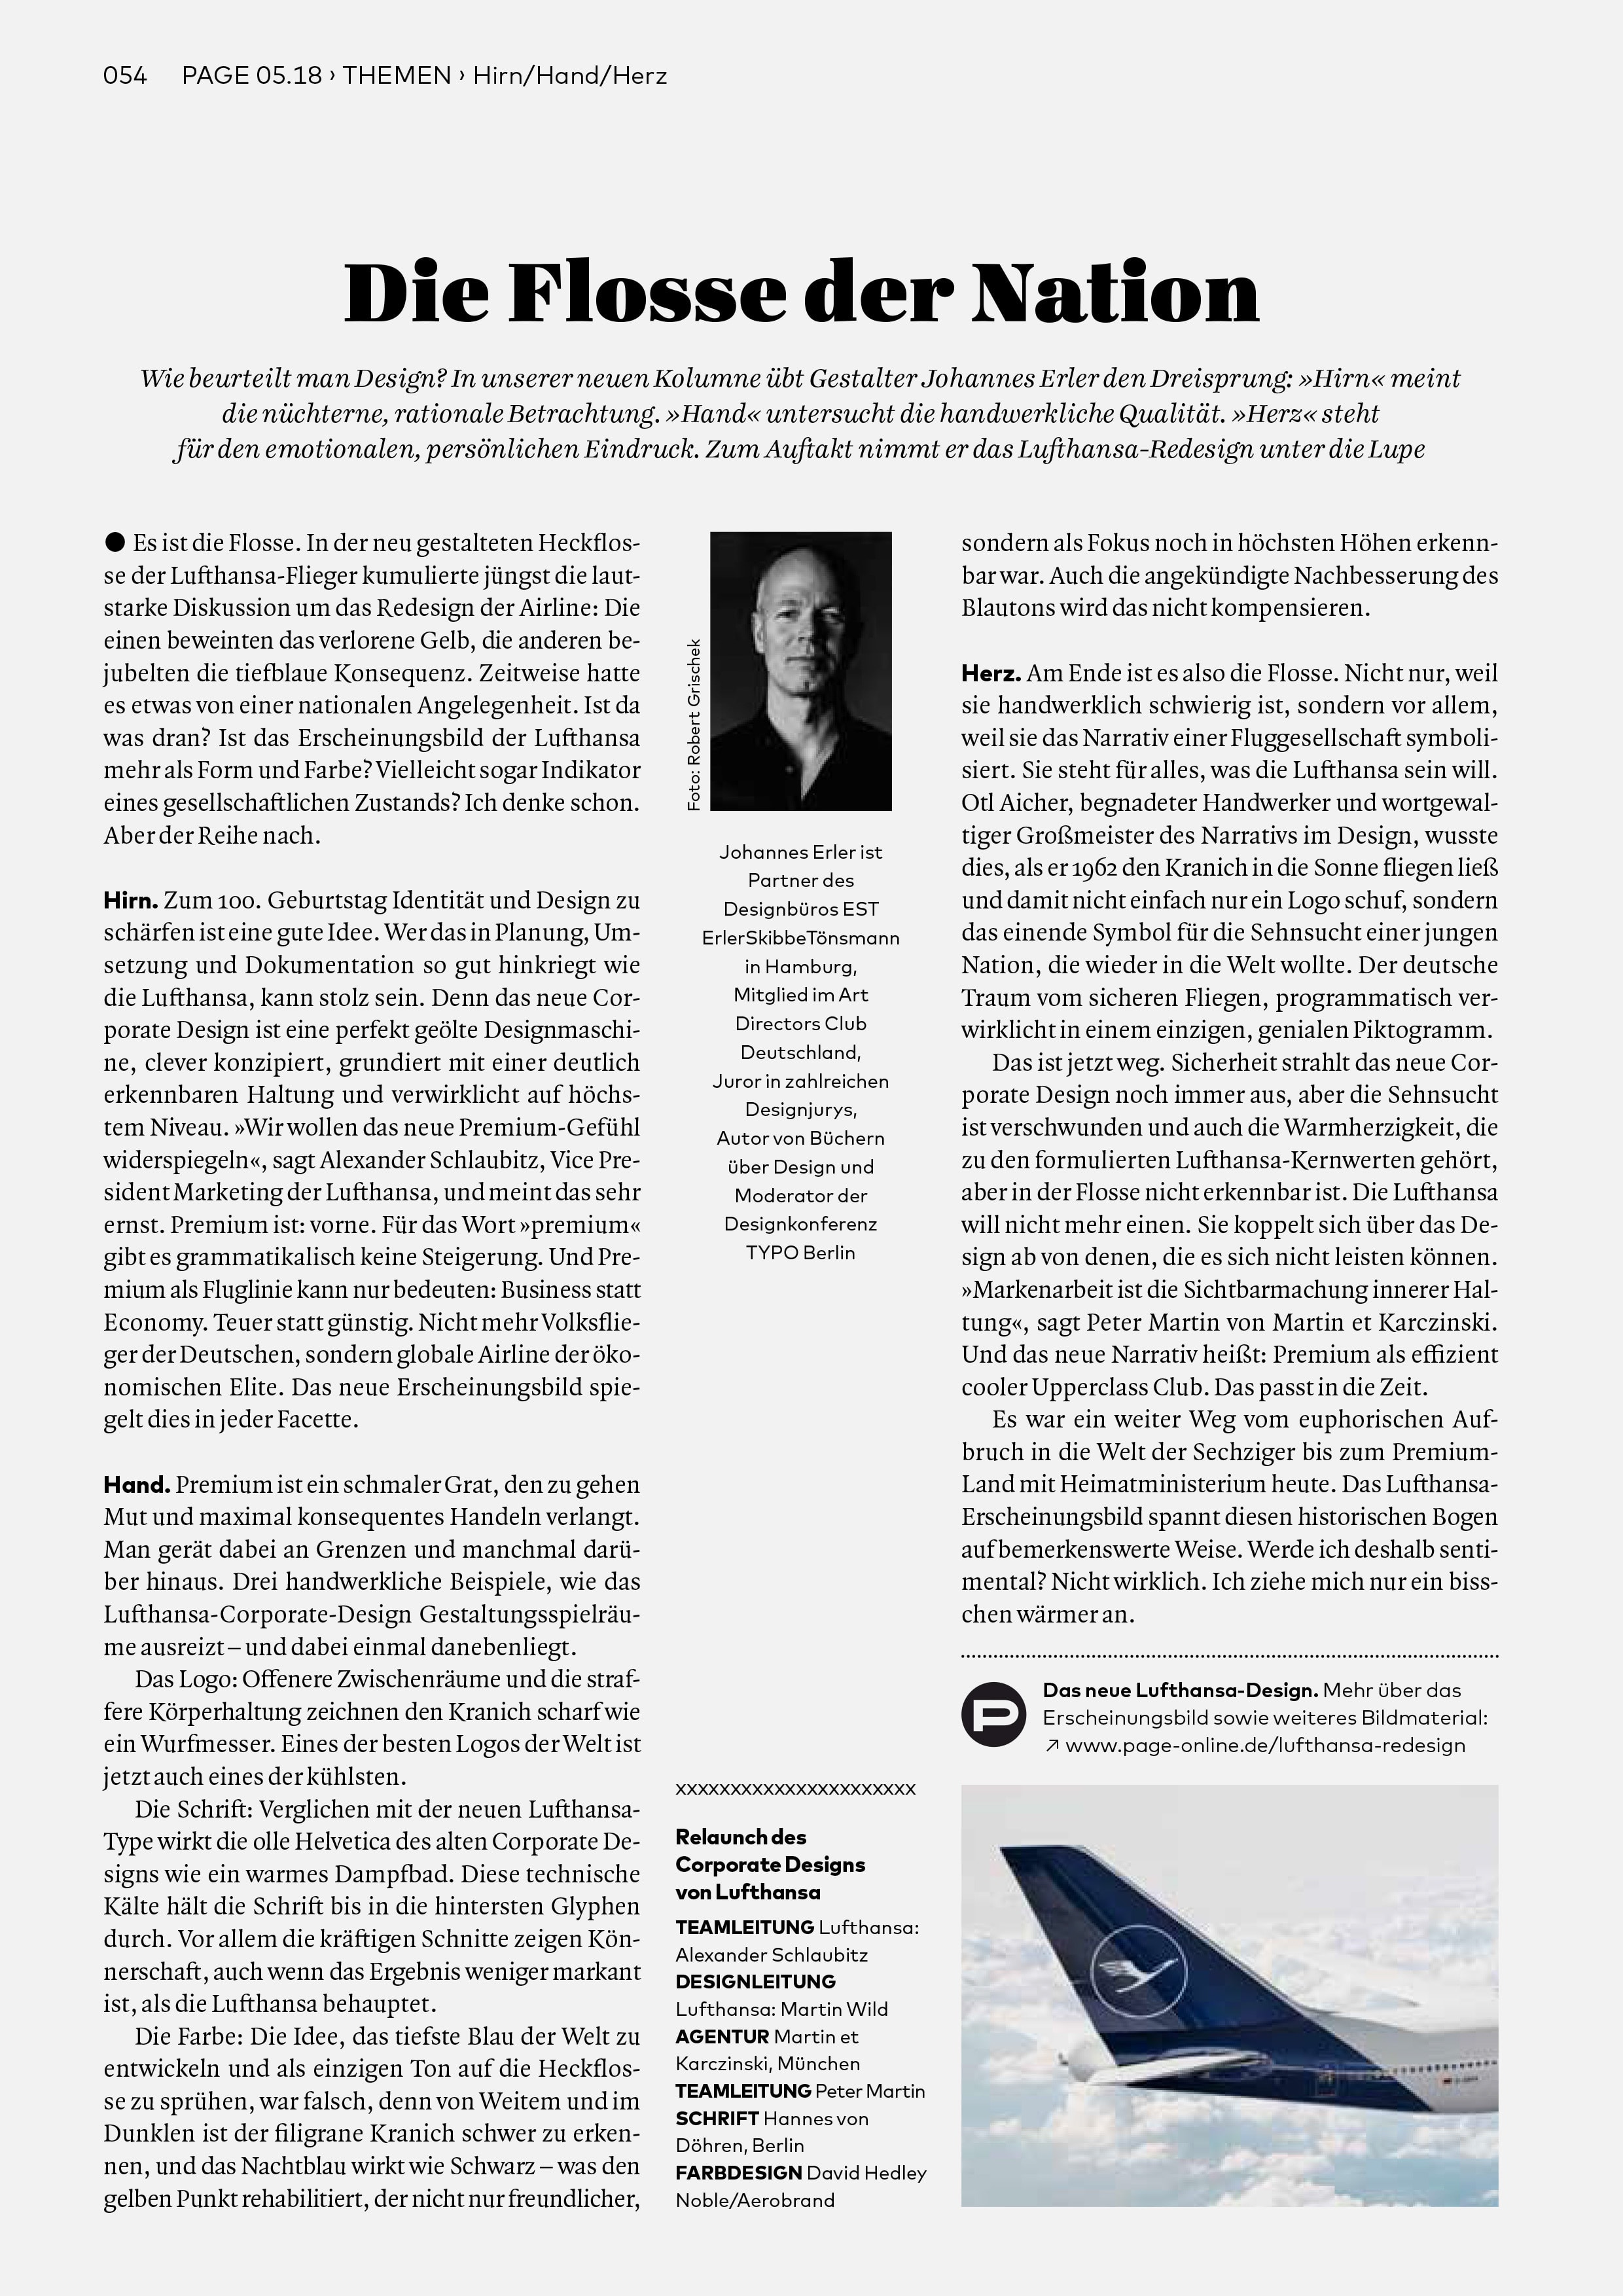 Bureau Johannes Erler – Designkritik-Kolumne #1: Das neue Redesign der Lufthansa